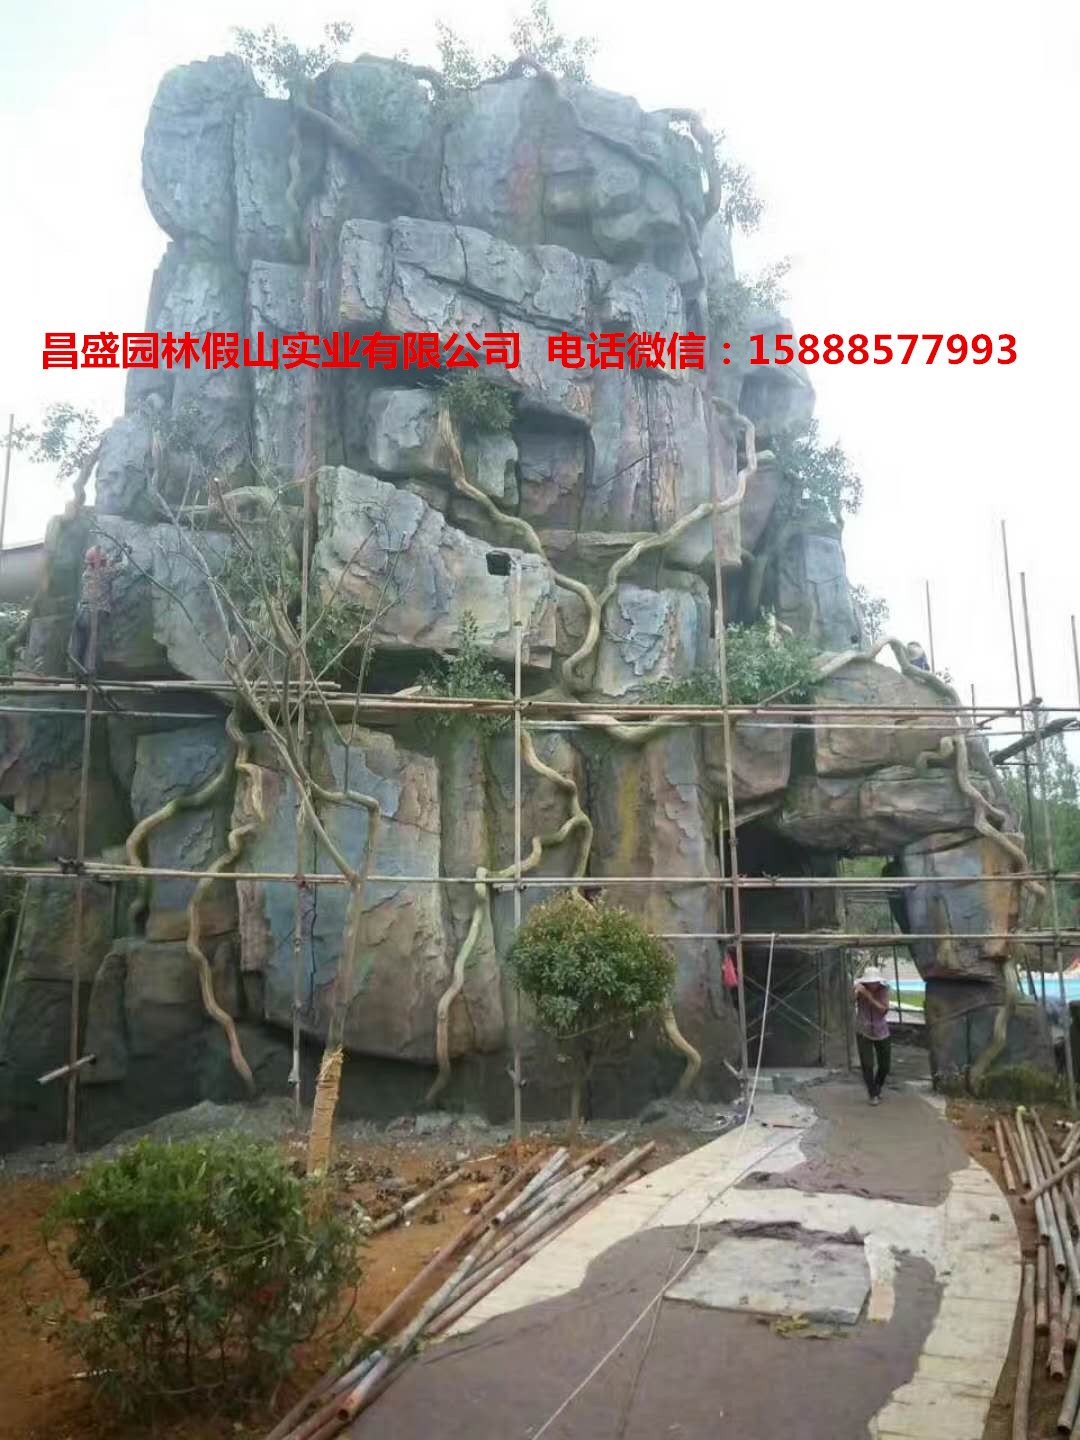 建瓯县做塑石假山仿树塑造天下美景  